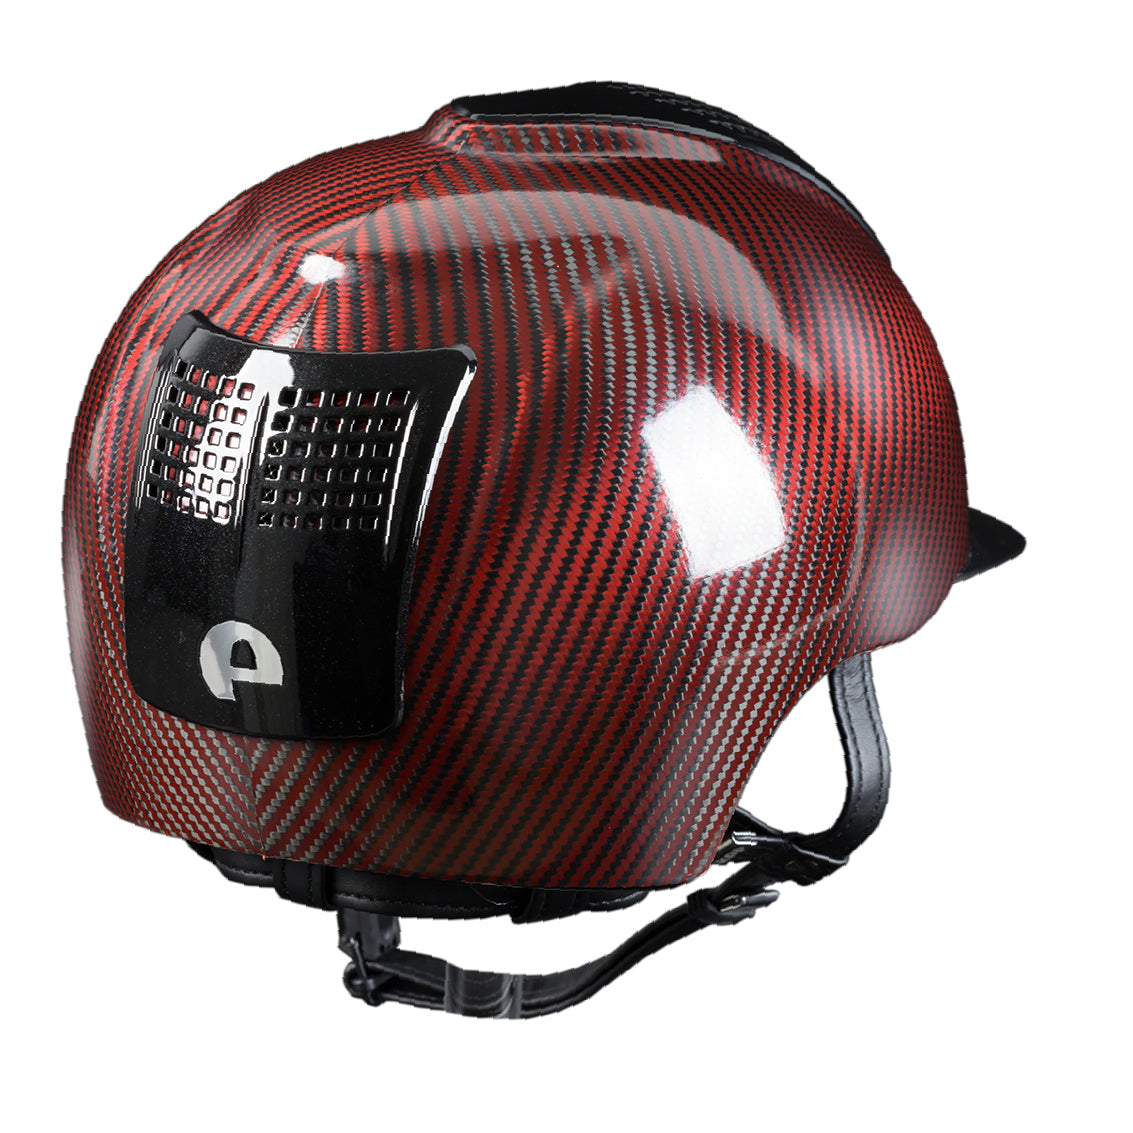 Casco in carbonio E-light Rosso e Nero lucido, visiera nero metallizzato e 2 inserti nero metallizzato